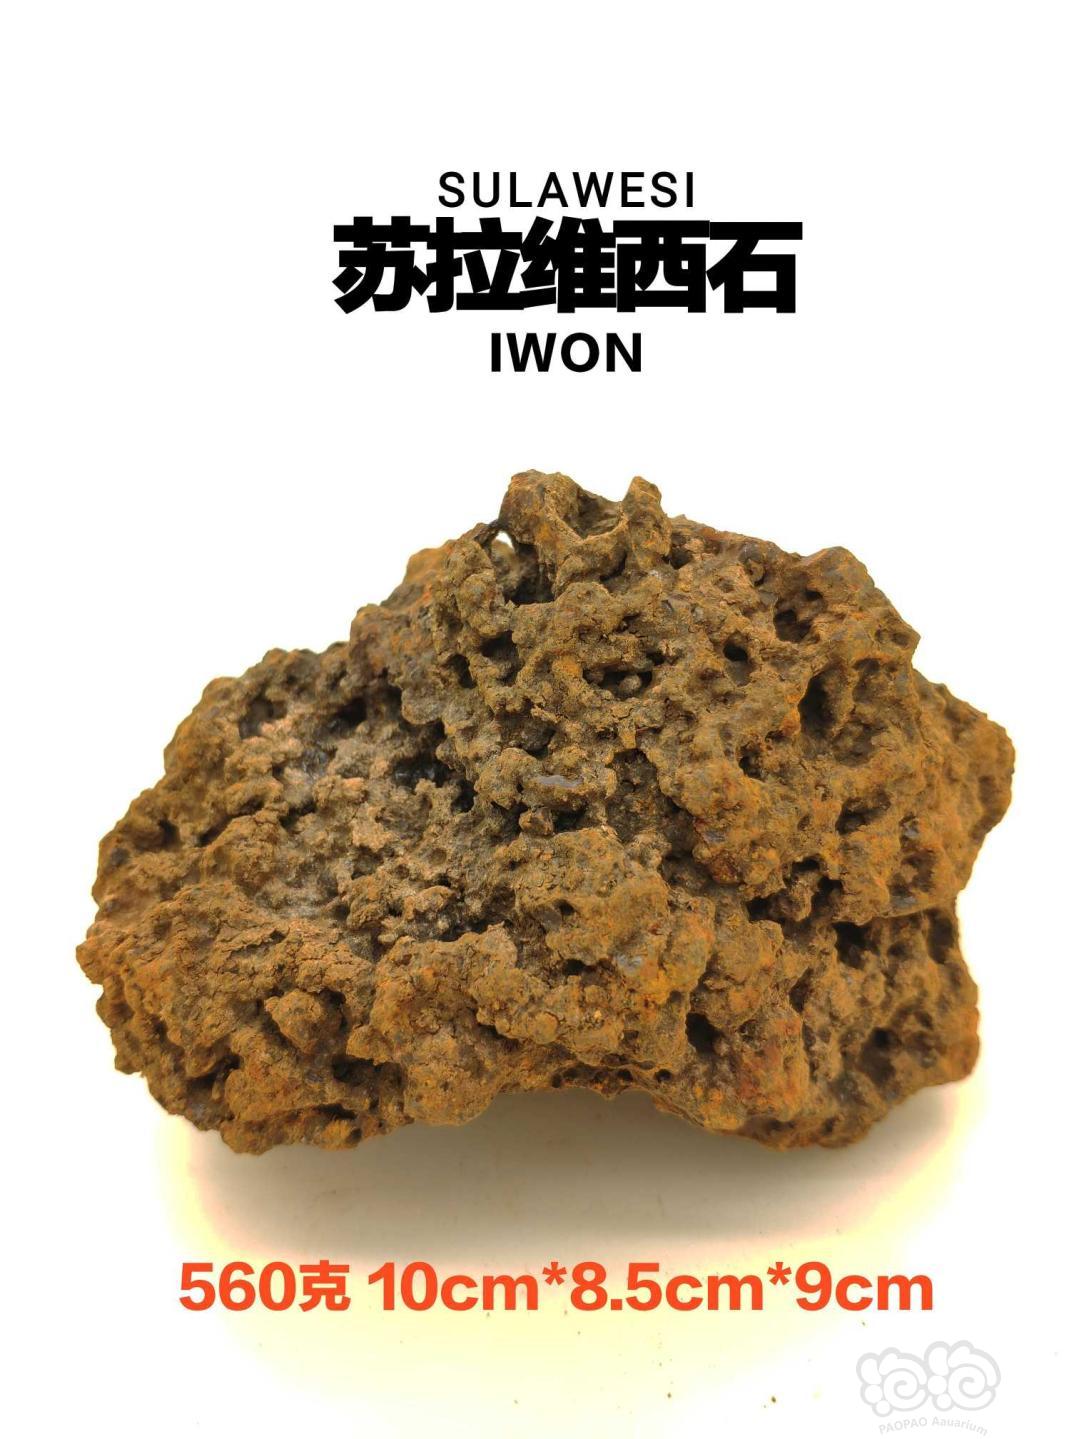 【用品】2019-08-12#RMB拍卖印尼进口天然苏拉维西石一块-图1